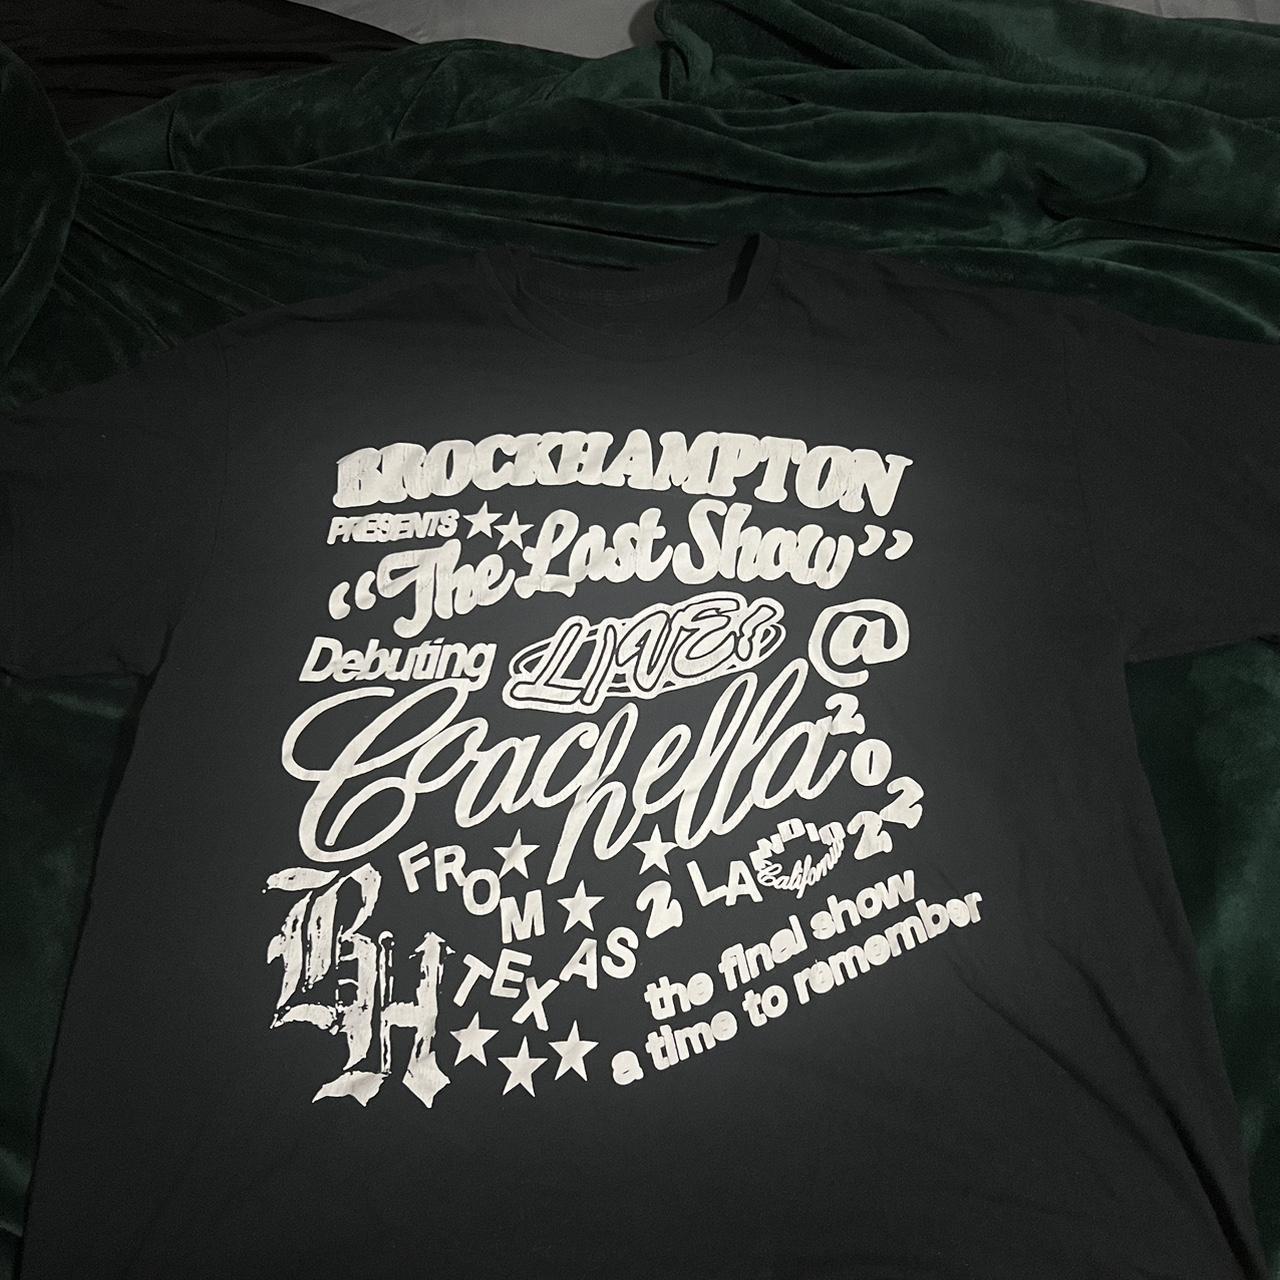 Brockhampton Men's Black and White T-shirt